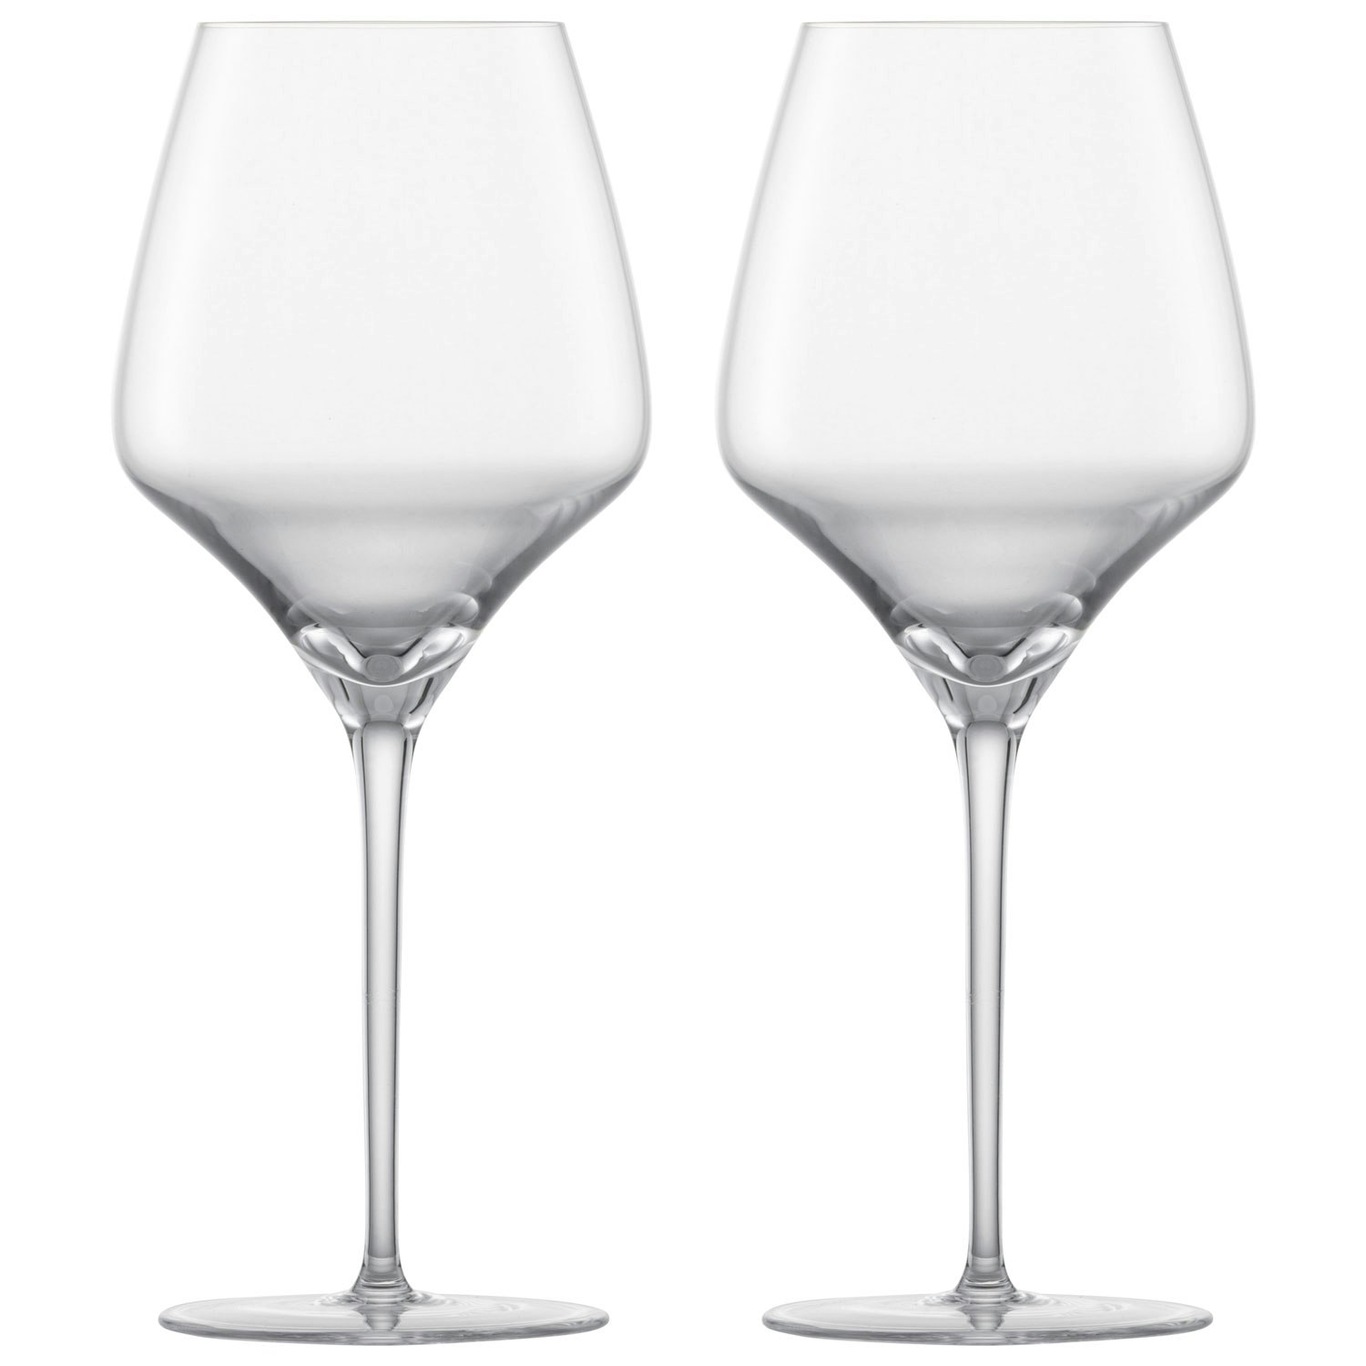 Alloro Chardonnay Weißweinglas 52, 2-er Set